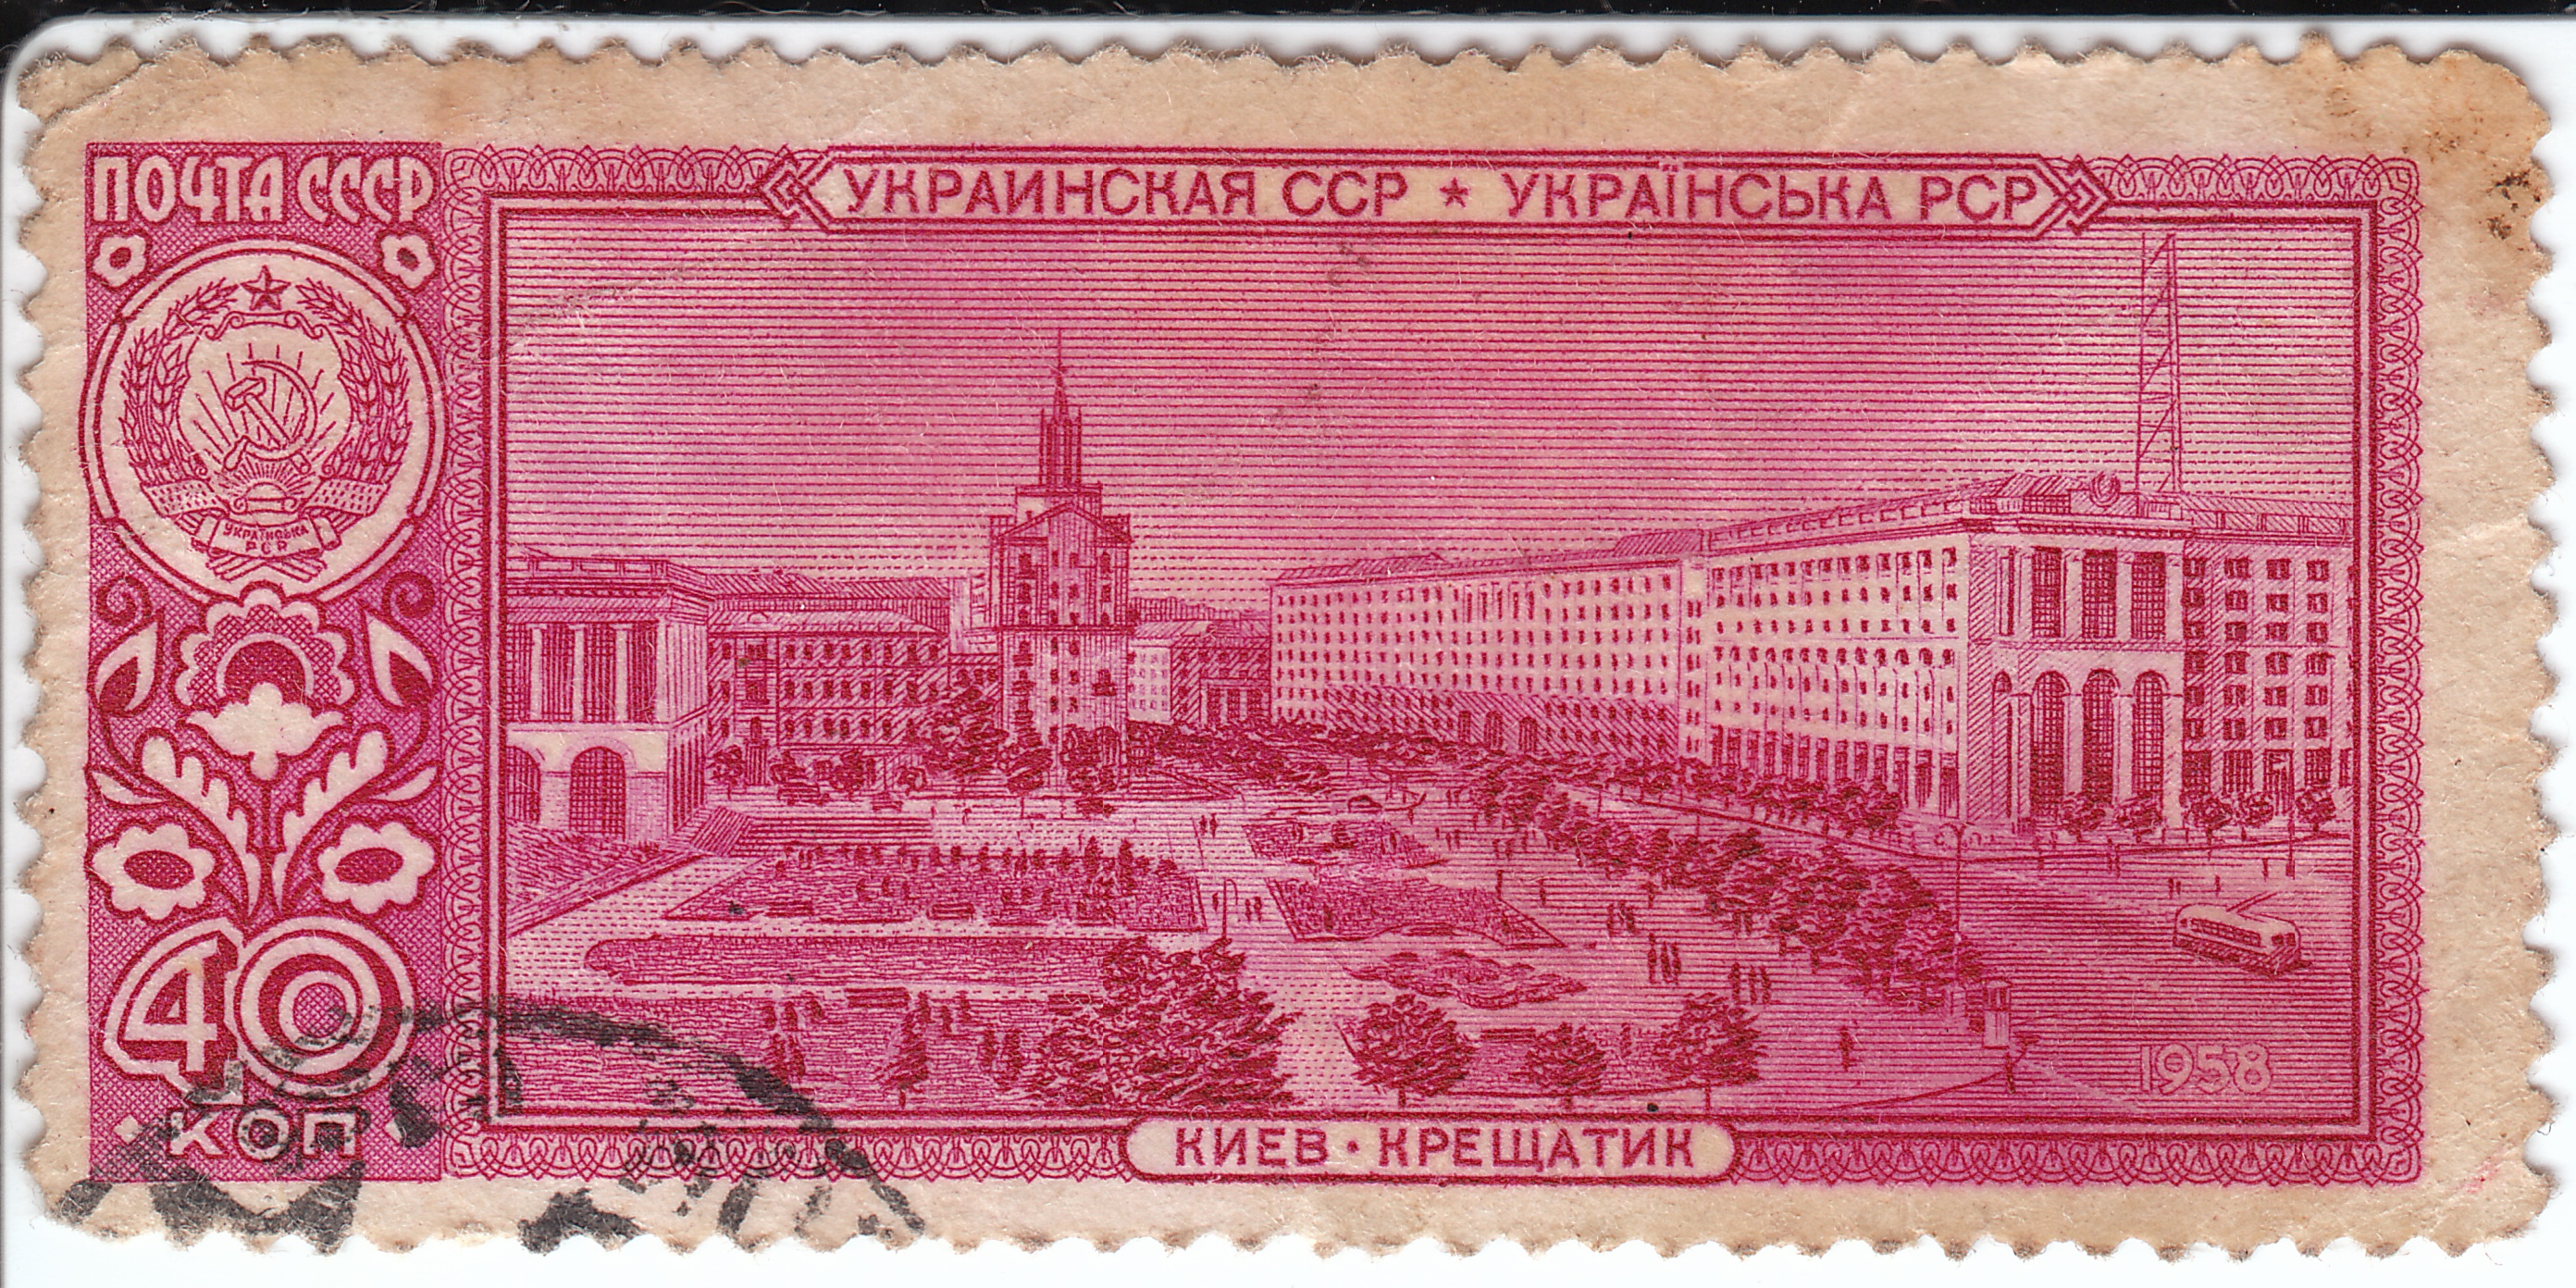 1958 Украинская ССР Киев Крещатник